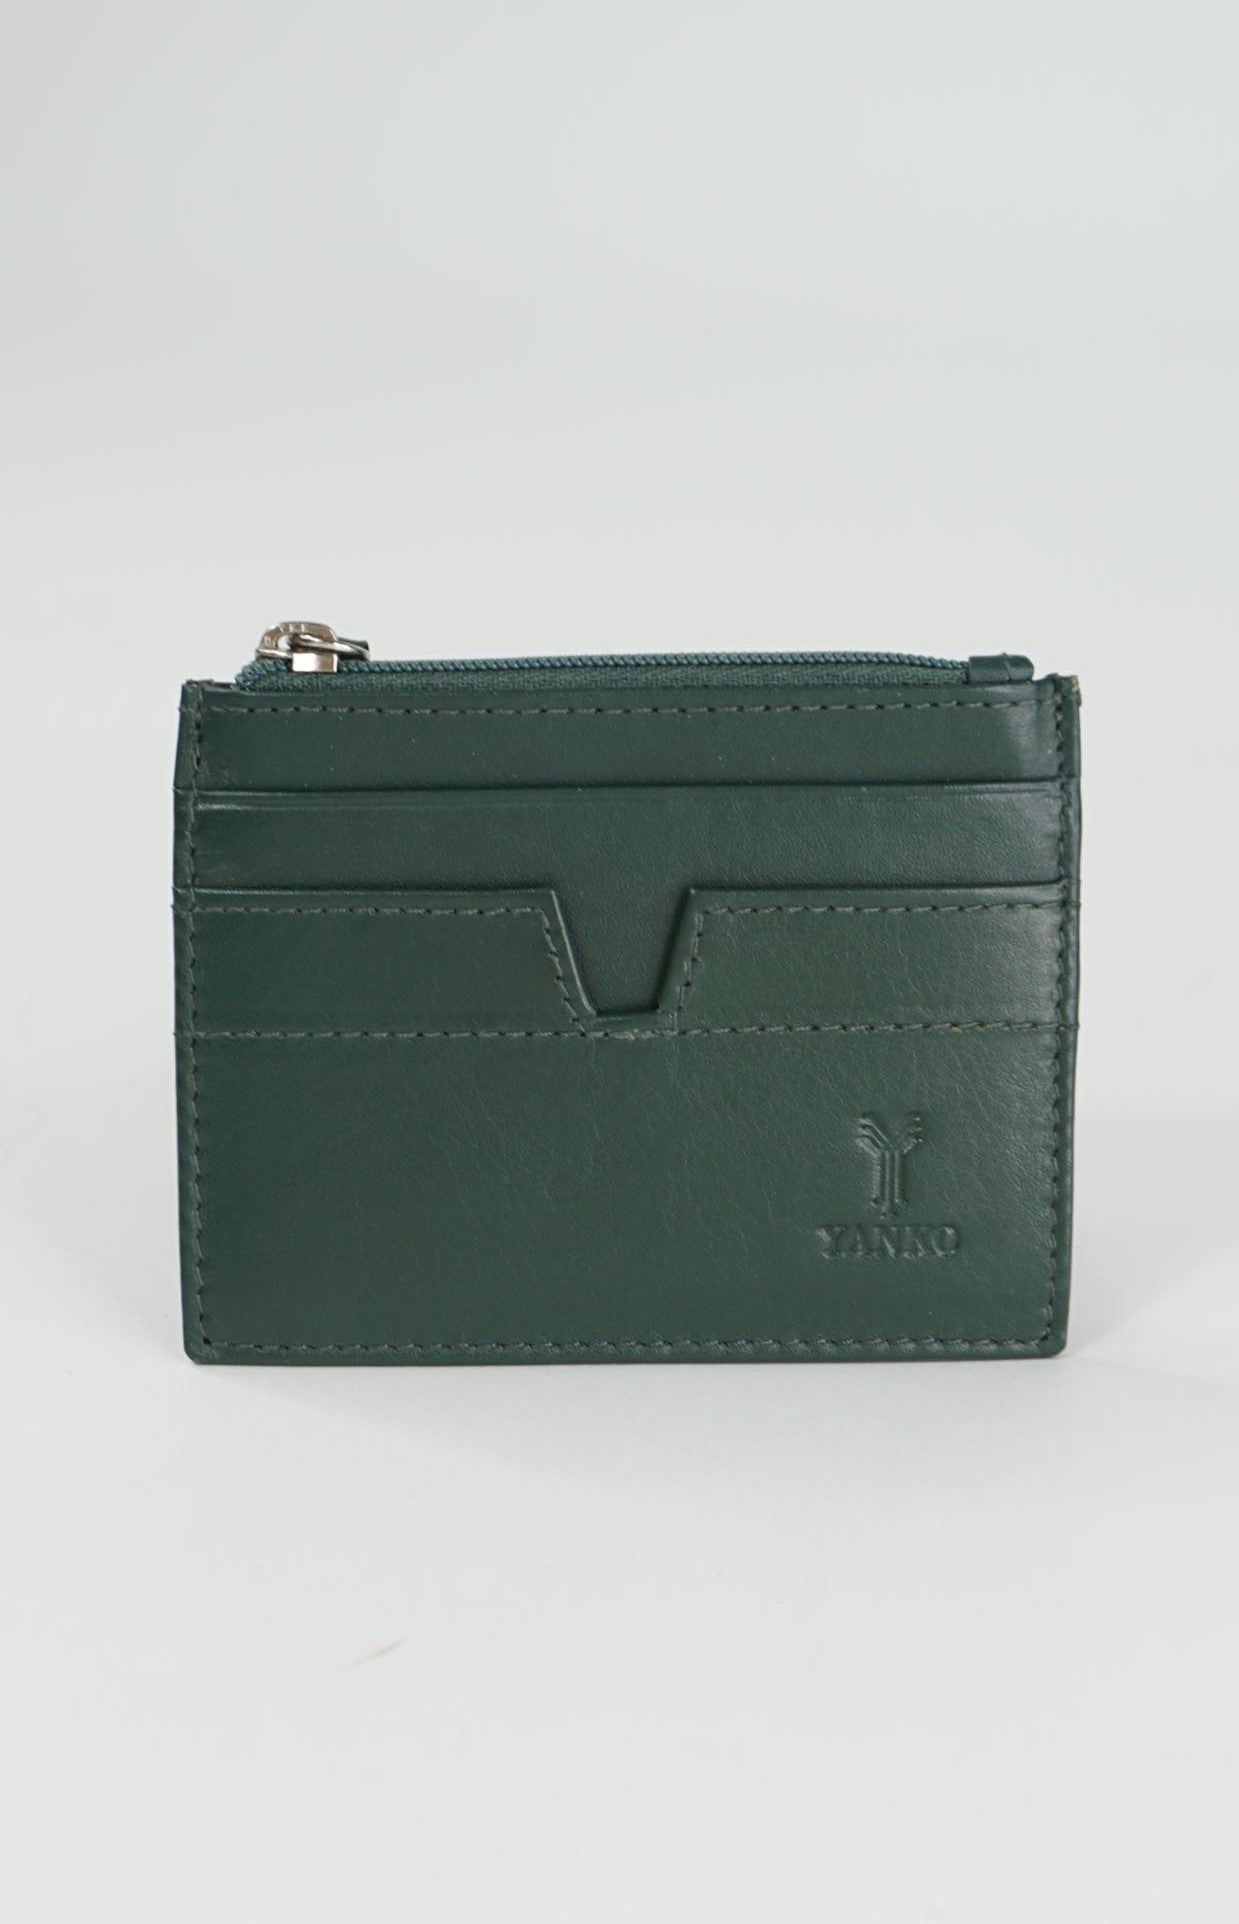 Yanco Olive Green Leather  Cardholder